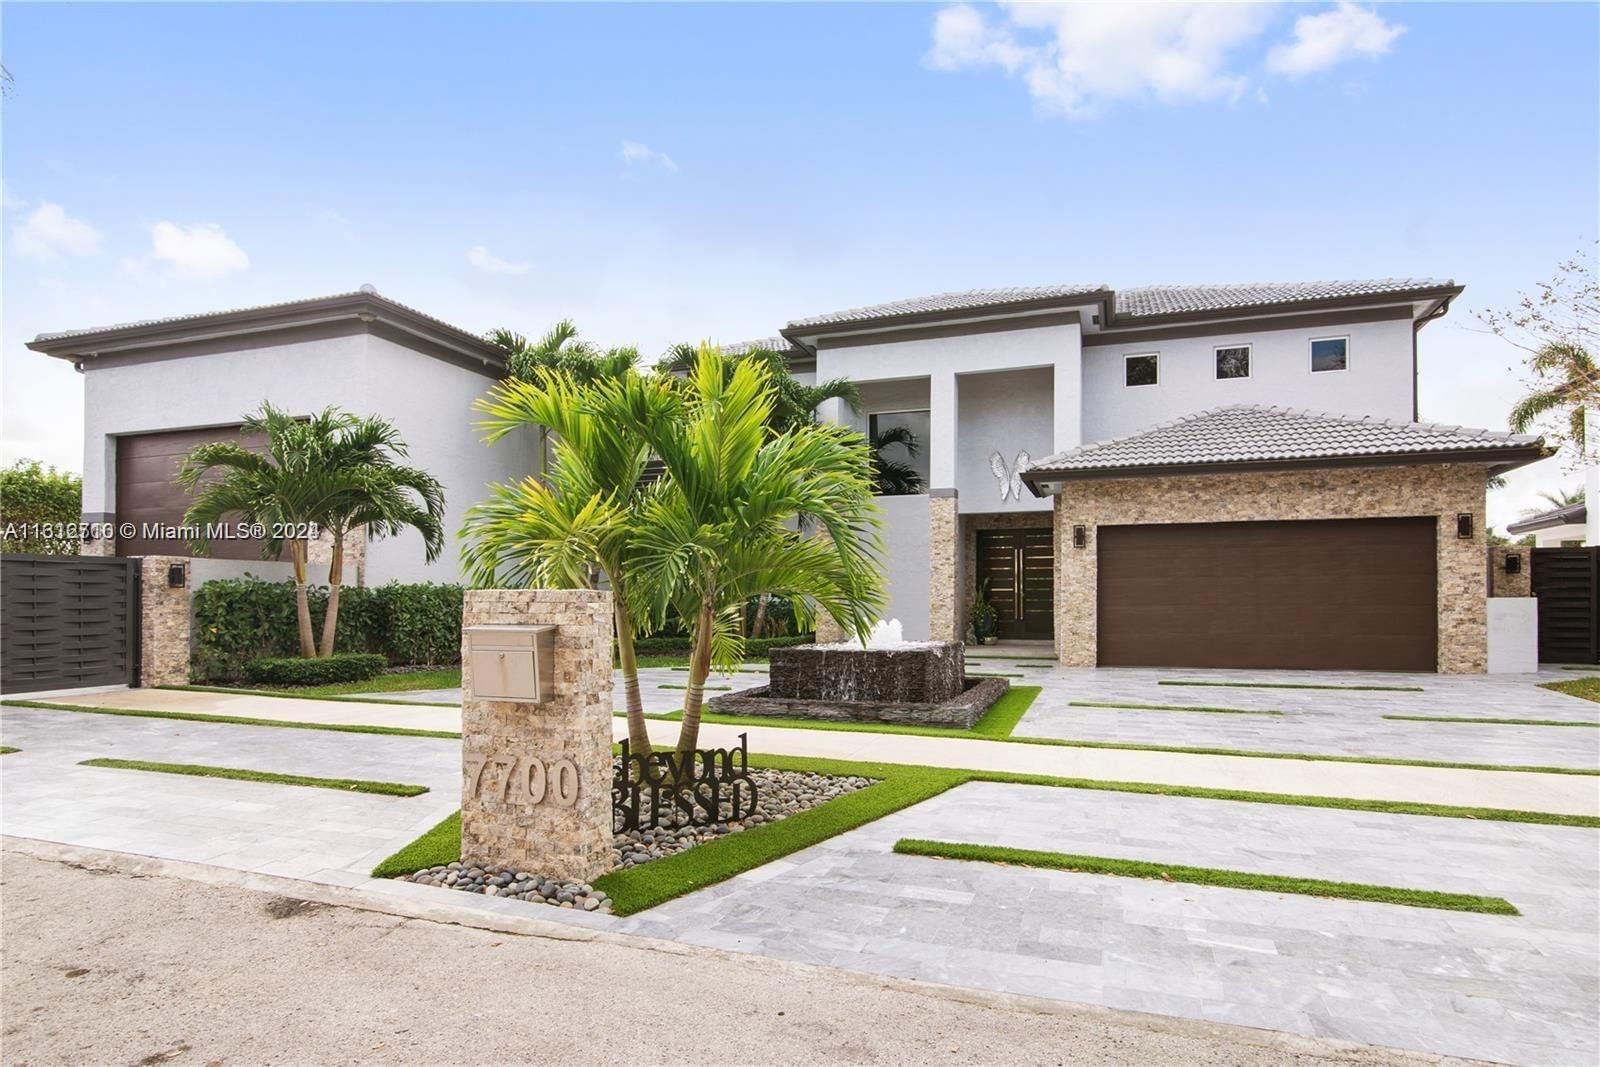 Real estate property located at 7700 163rd St, Miami-Dade County, PRIMAVERA 1ST ADDN, Miami Lakes, FL